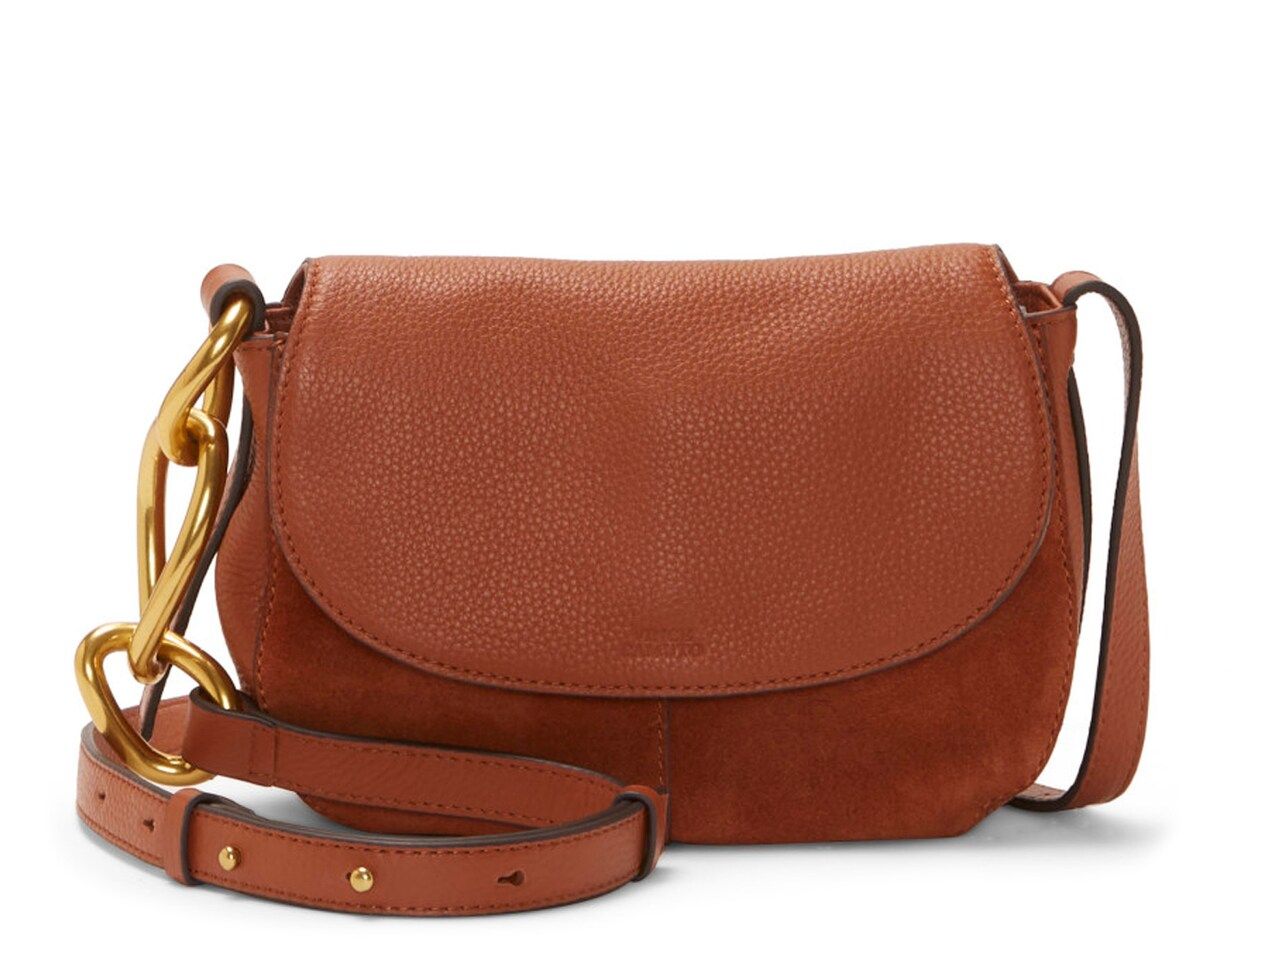 Zofi Leather Crossbody Bag | DSW